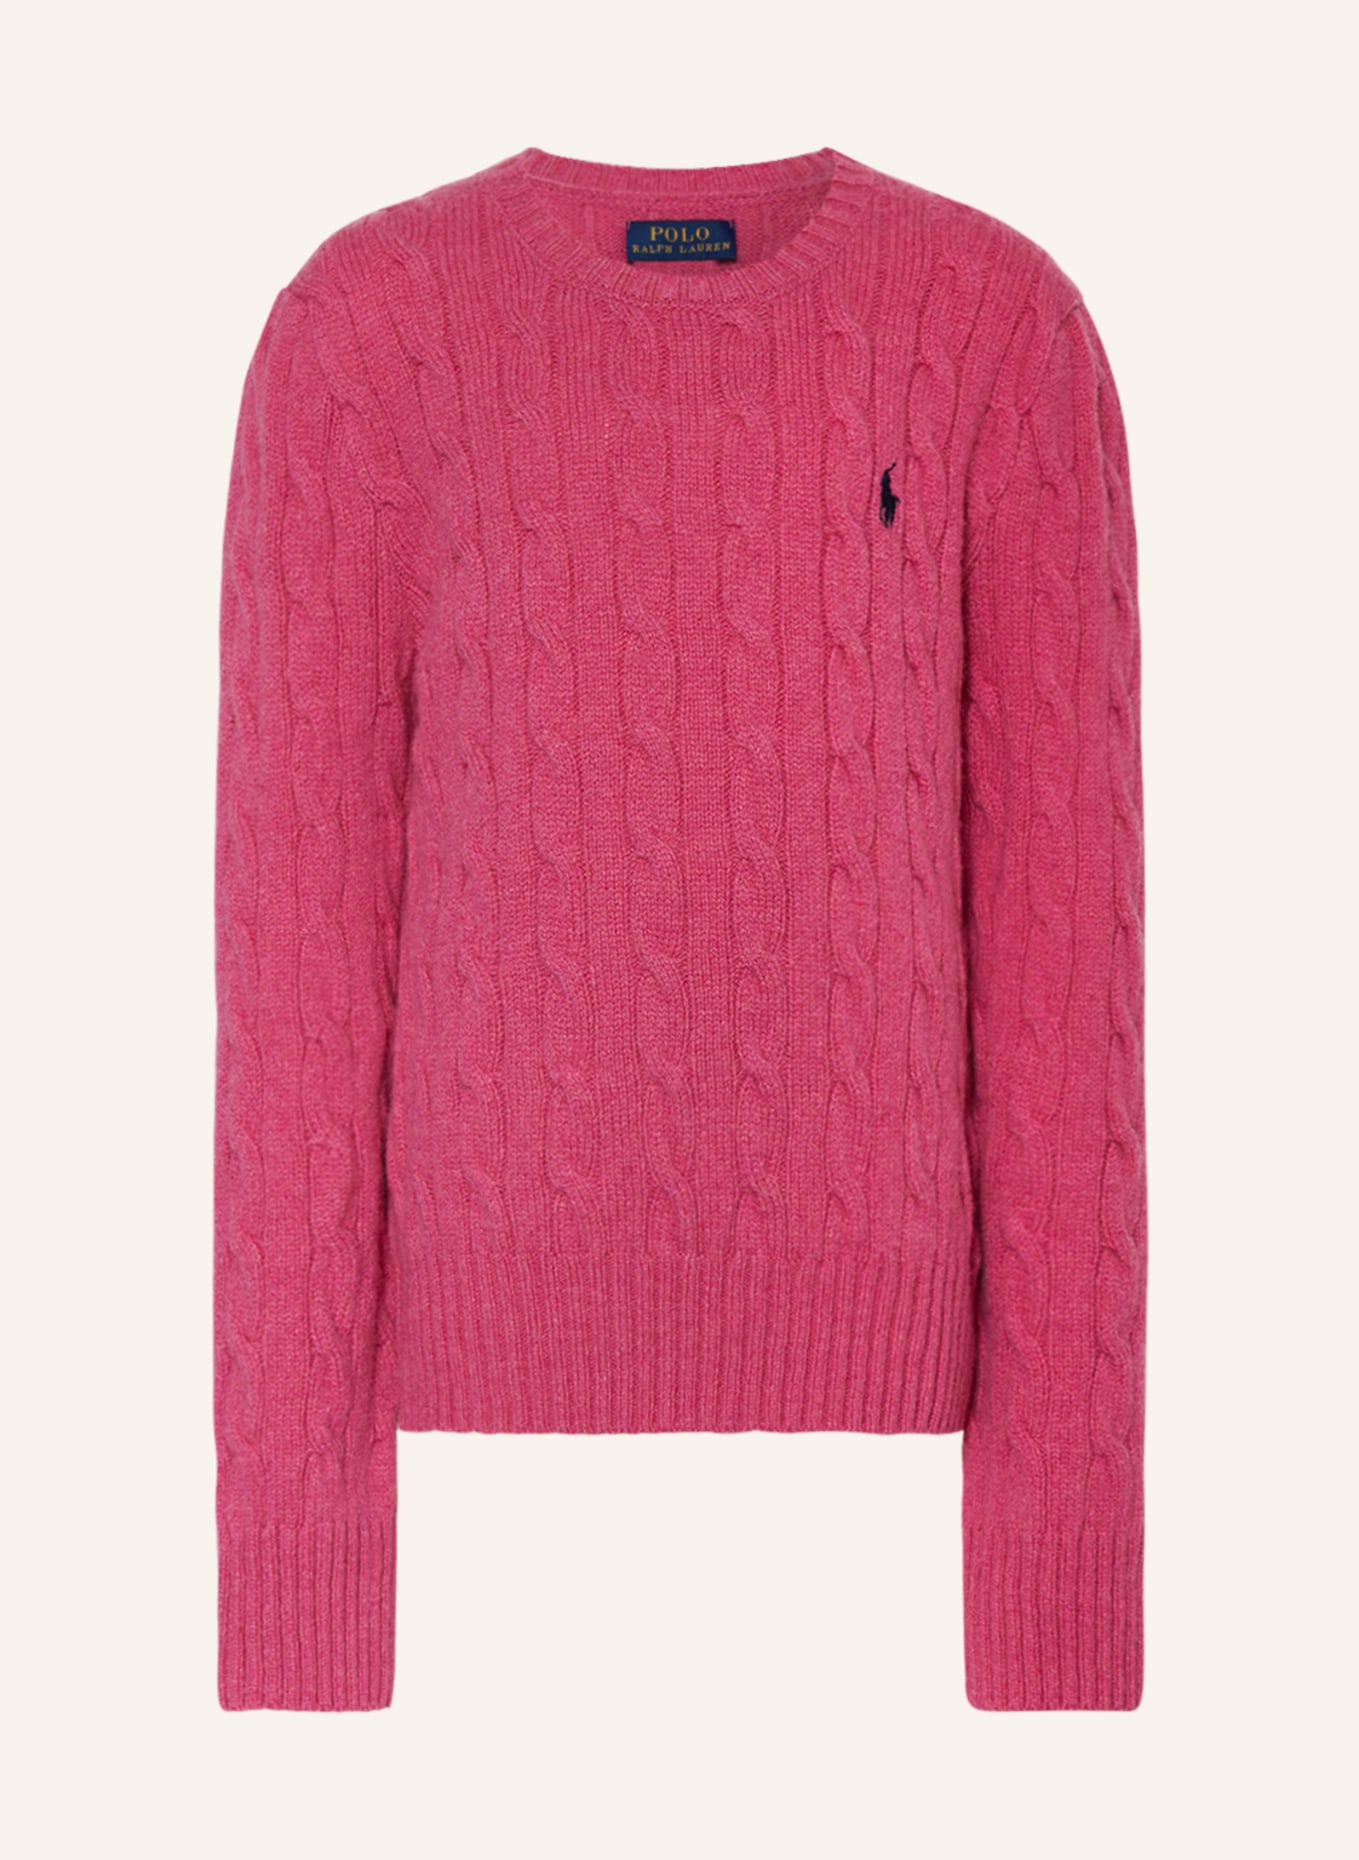 POLO RALPH LAUREN Pullover , Farbe: FUCHSIA (Bild 1)